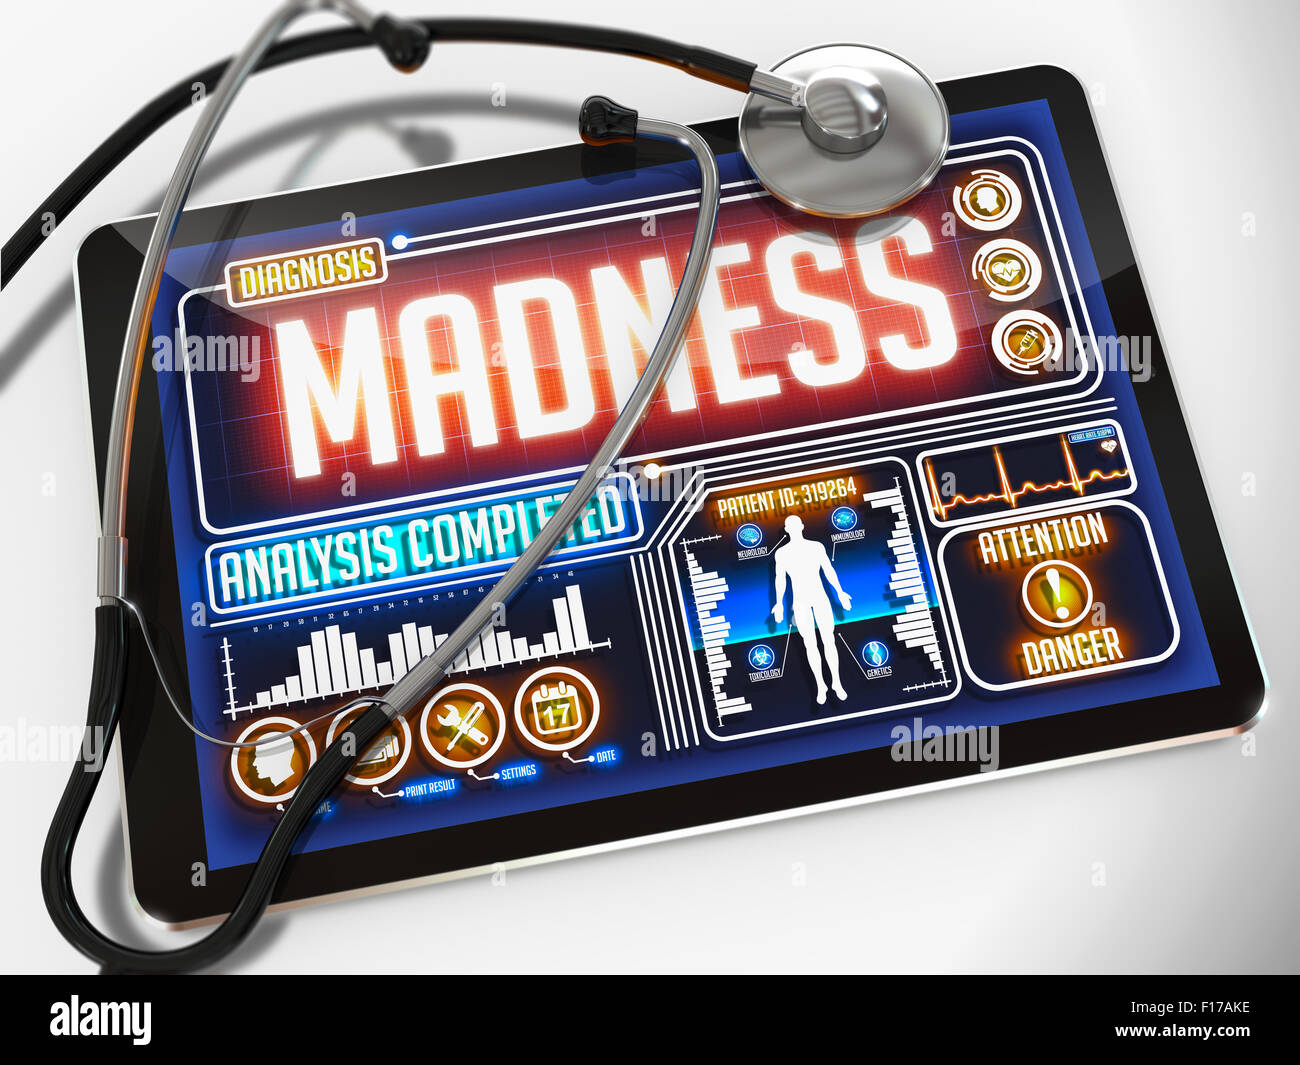 Madness - Diagnosi del display del Tablet medico e un stetoscopio nero su sfondo bianco. Foto Stock